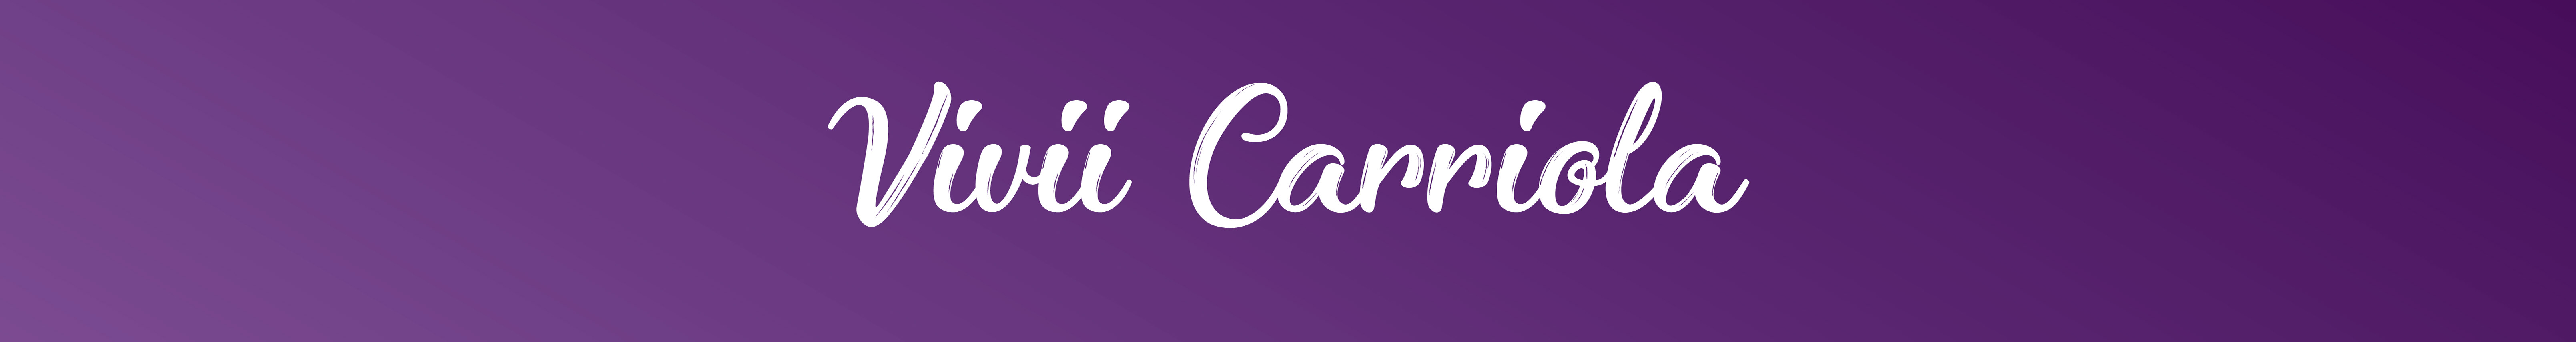 Vivii Carriola's profile banner